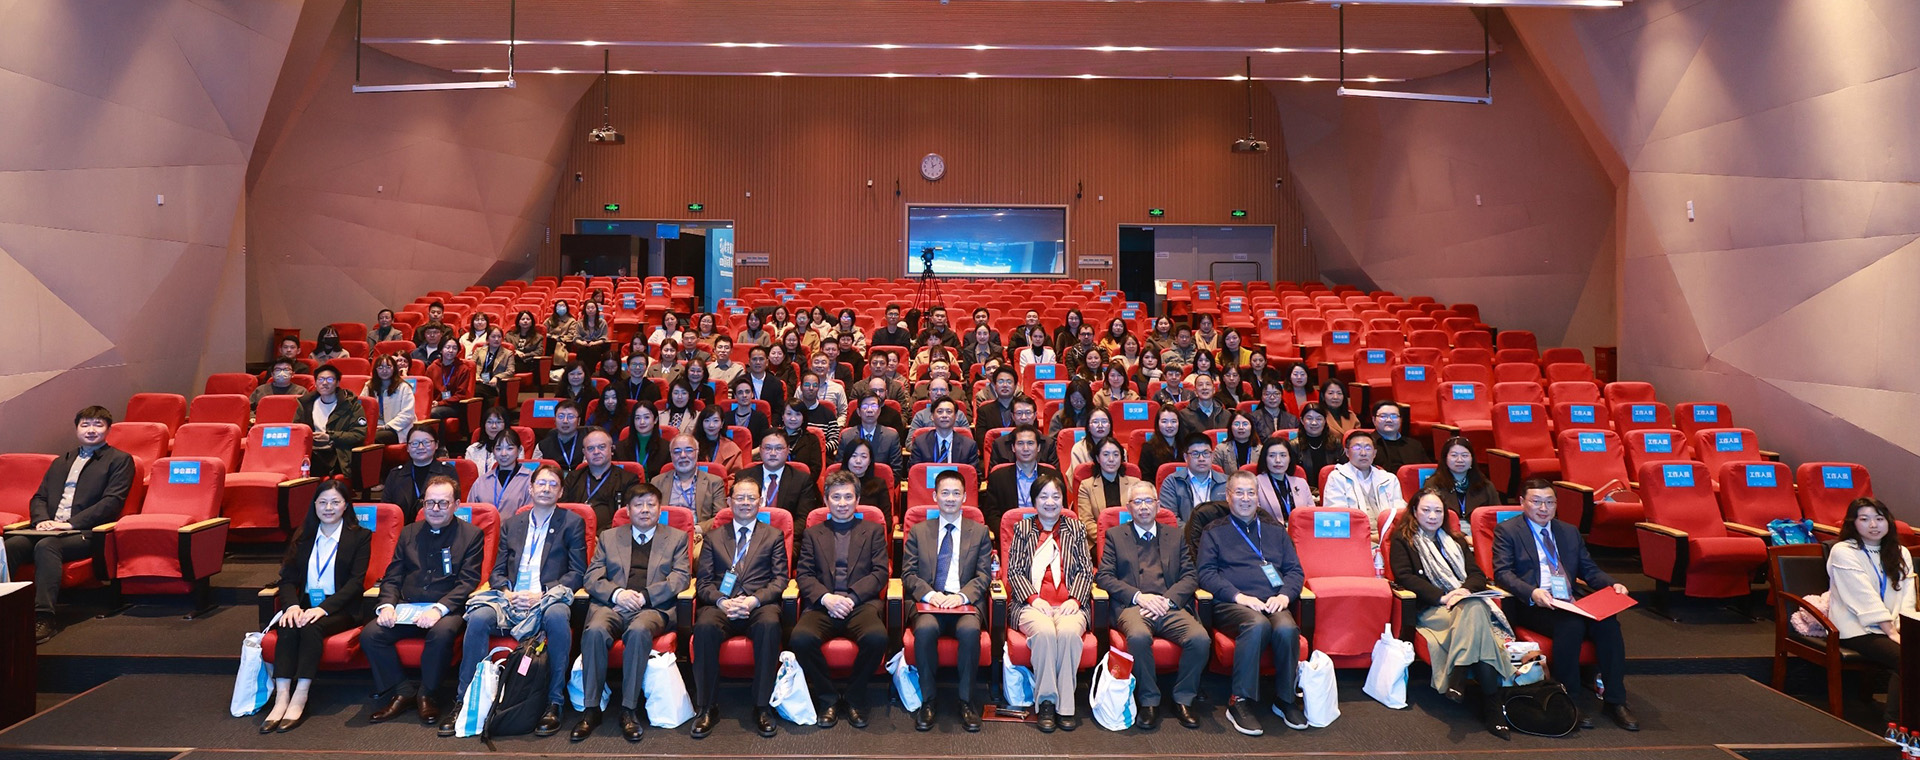 上海交通大学第一届可持续发展目标国际教育论坛成功举办